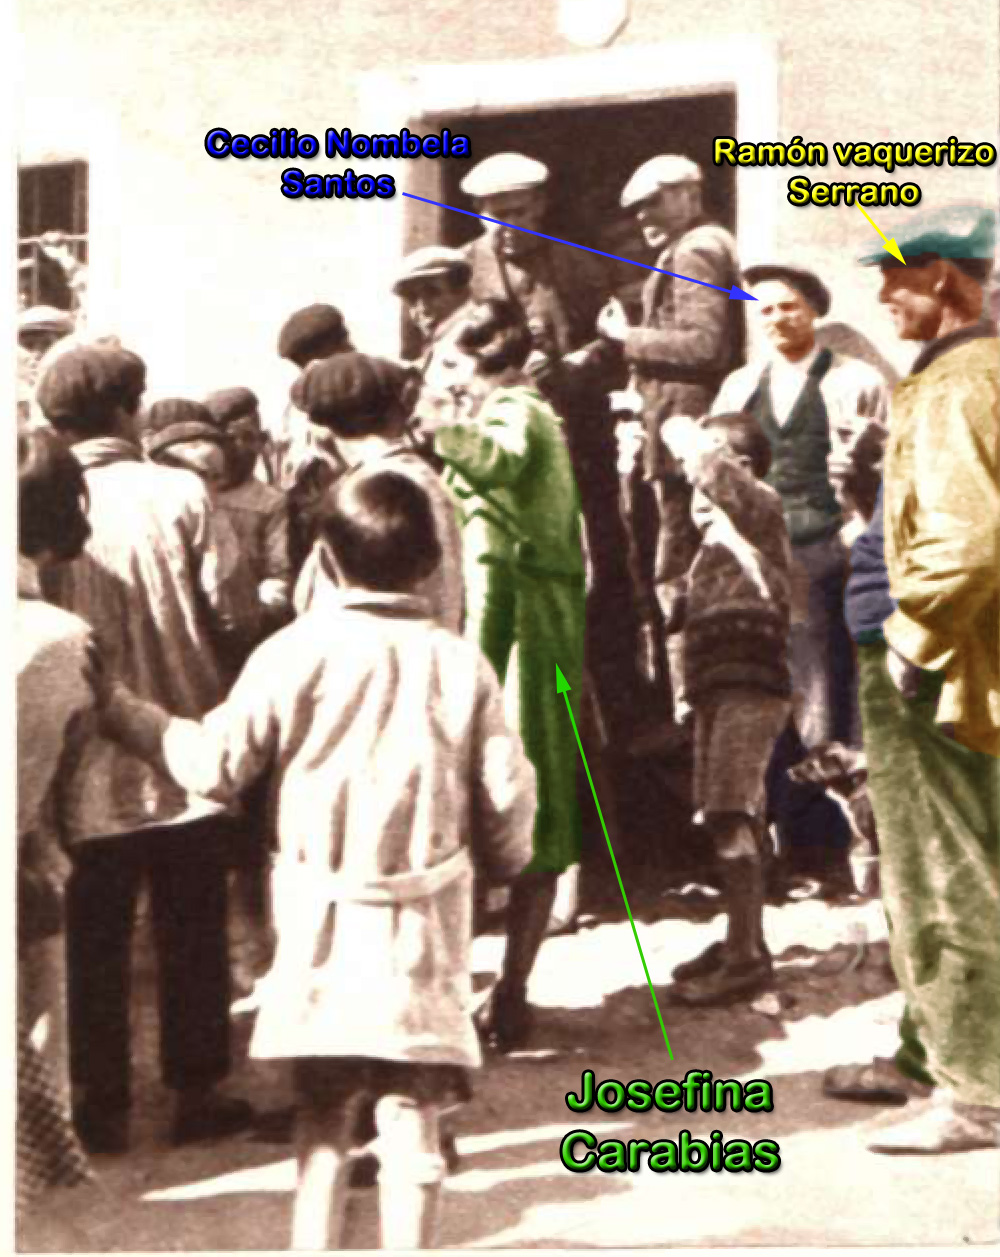 Fotografía 3 del reportaje de Josefina Carabias de 1934 sobre la comunidad de campesinos de Malpica de Tajo